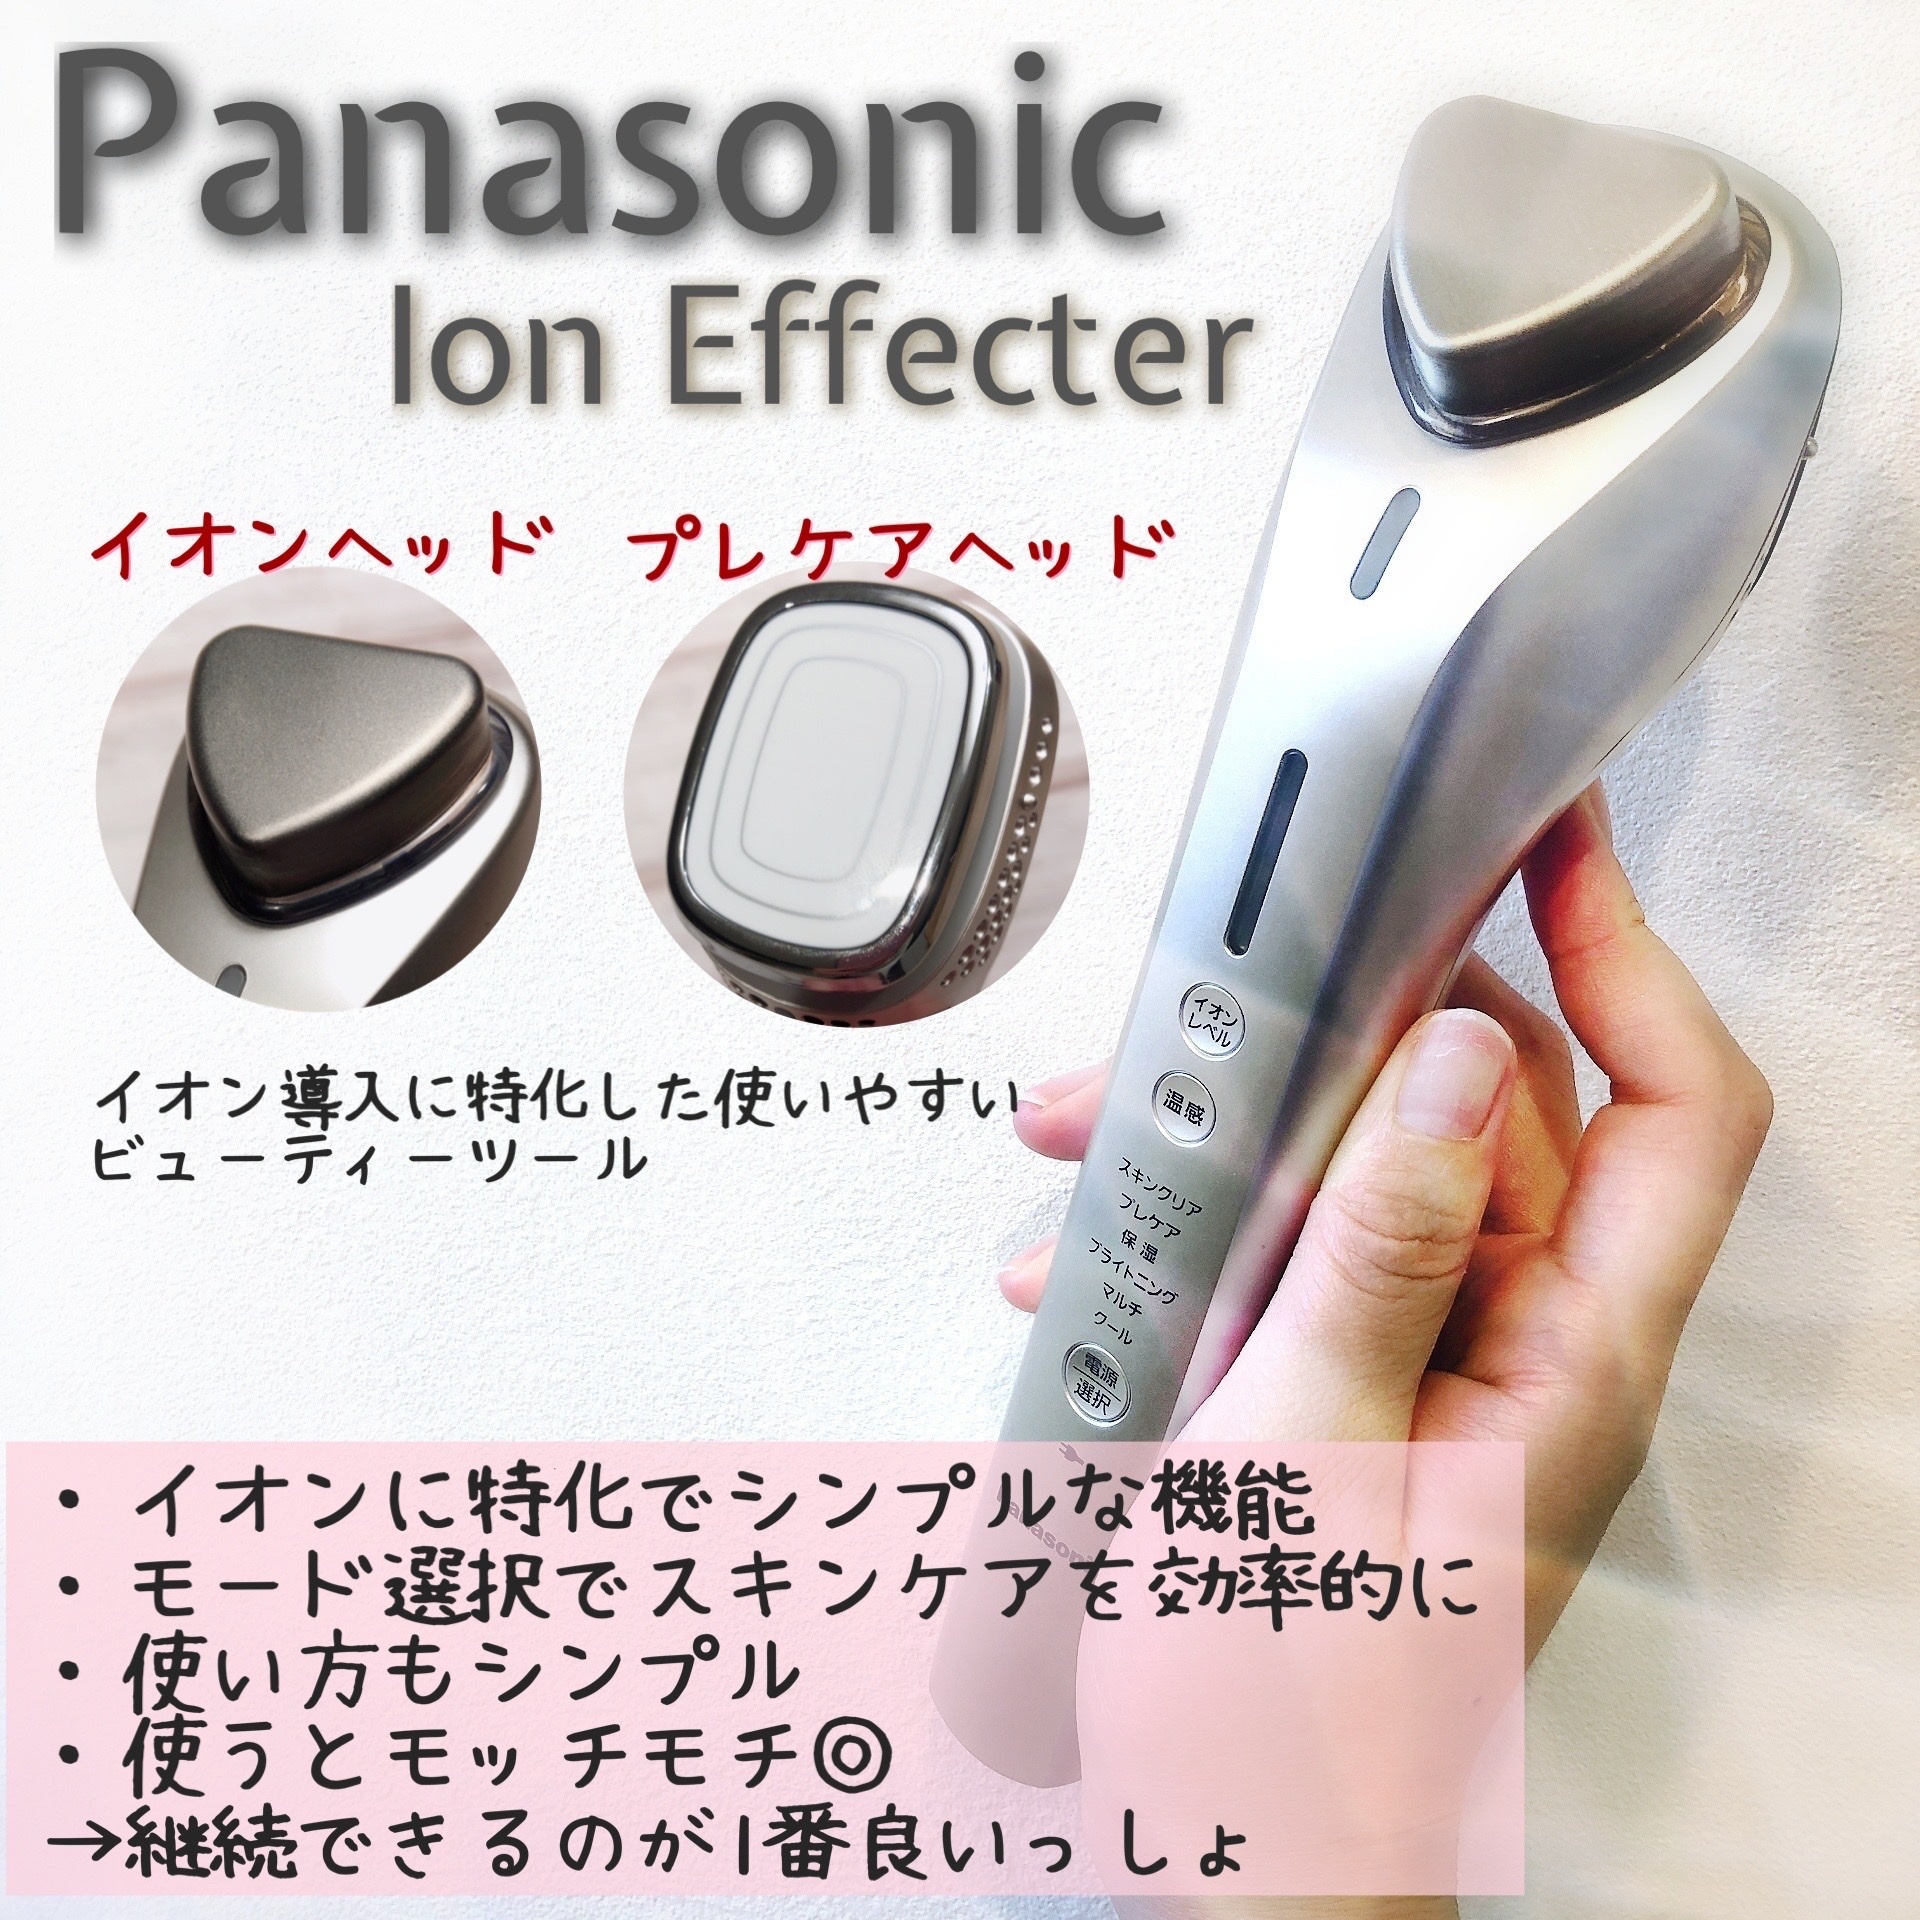 美容/健康 美容機器 Panasonic / 導入美顔器 イオンエフェクター EH-ST98の公式商品情報 